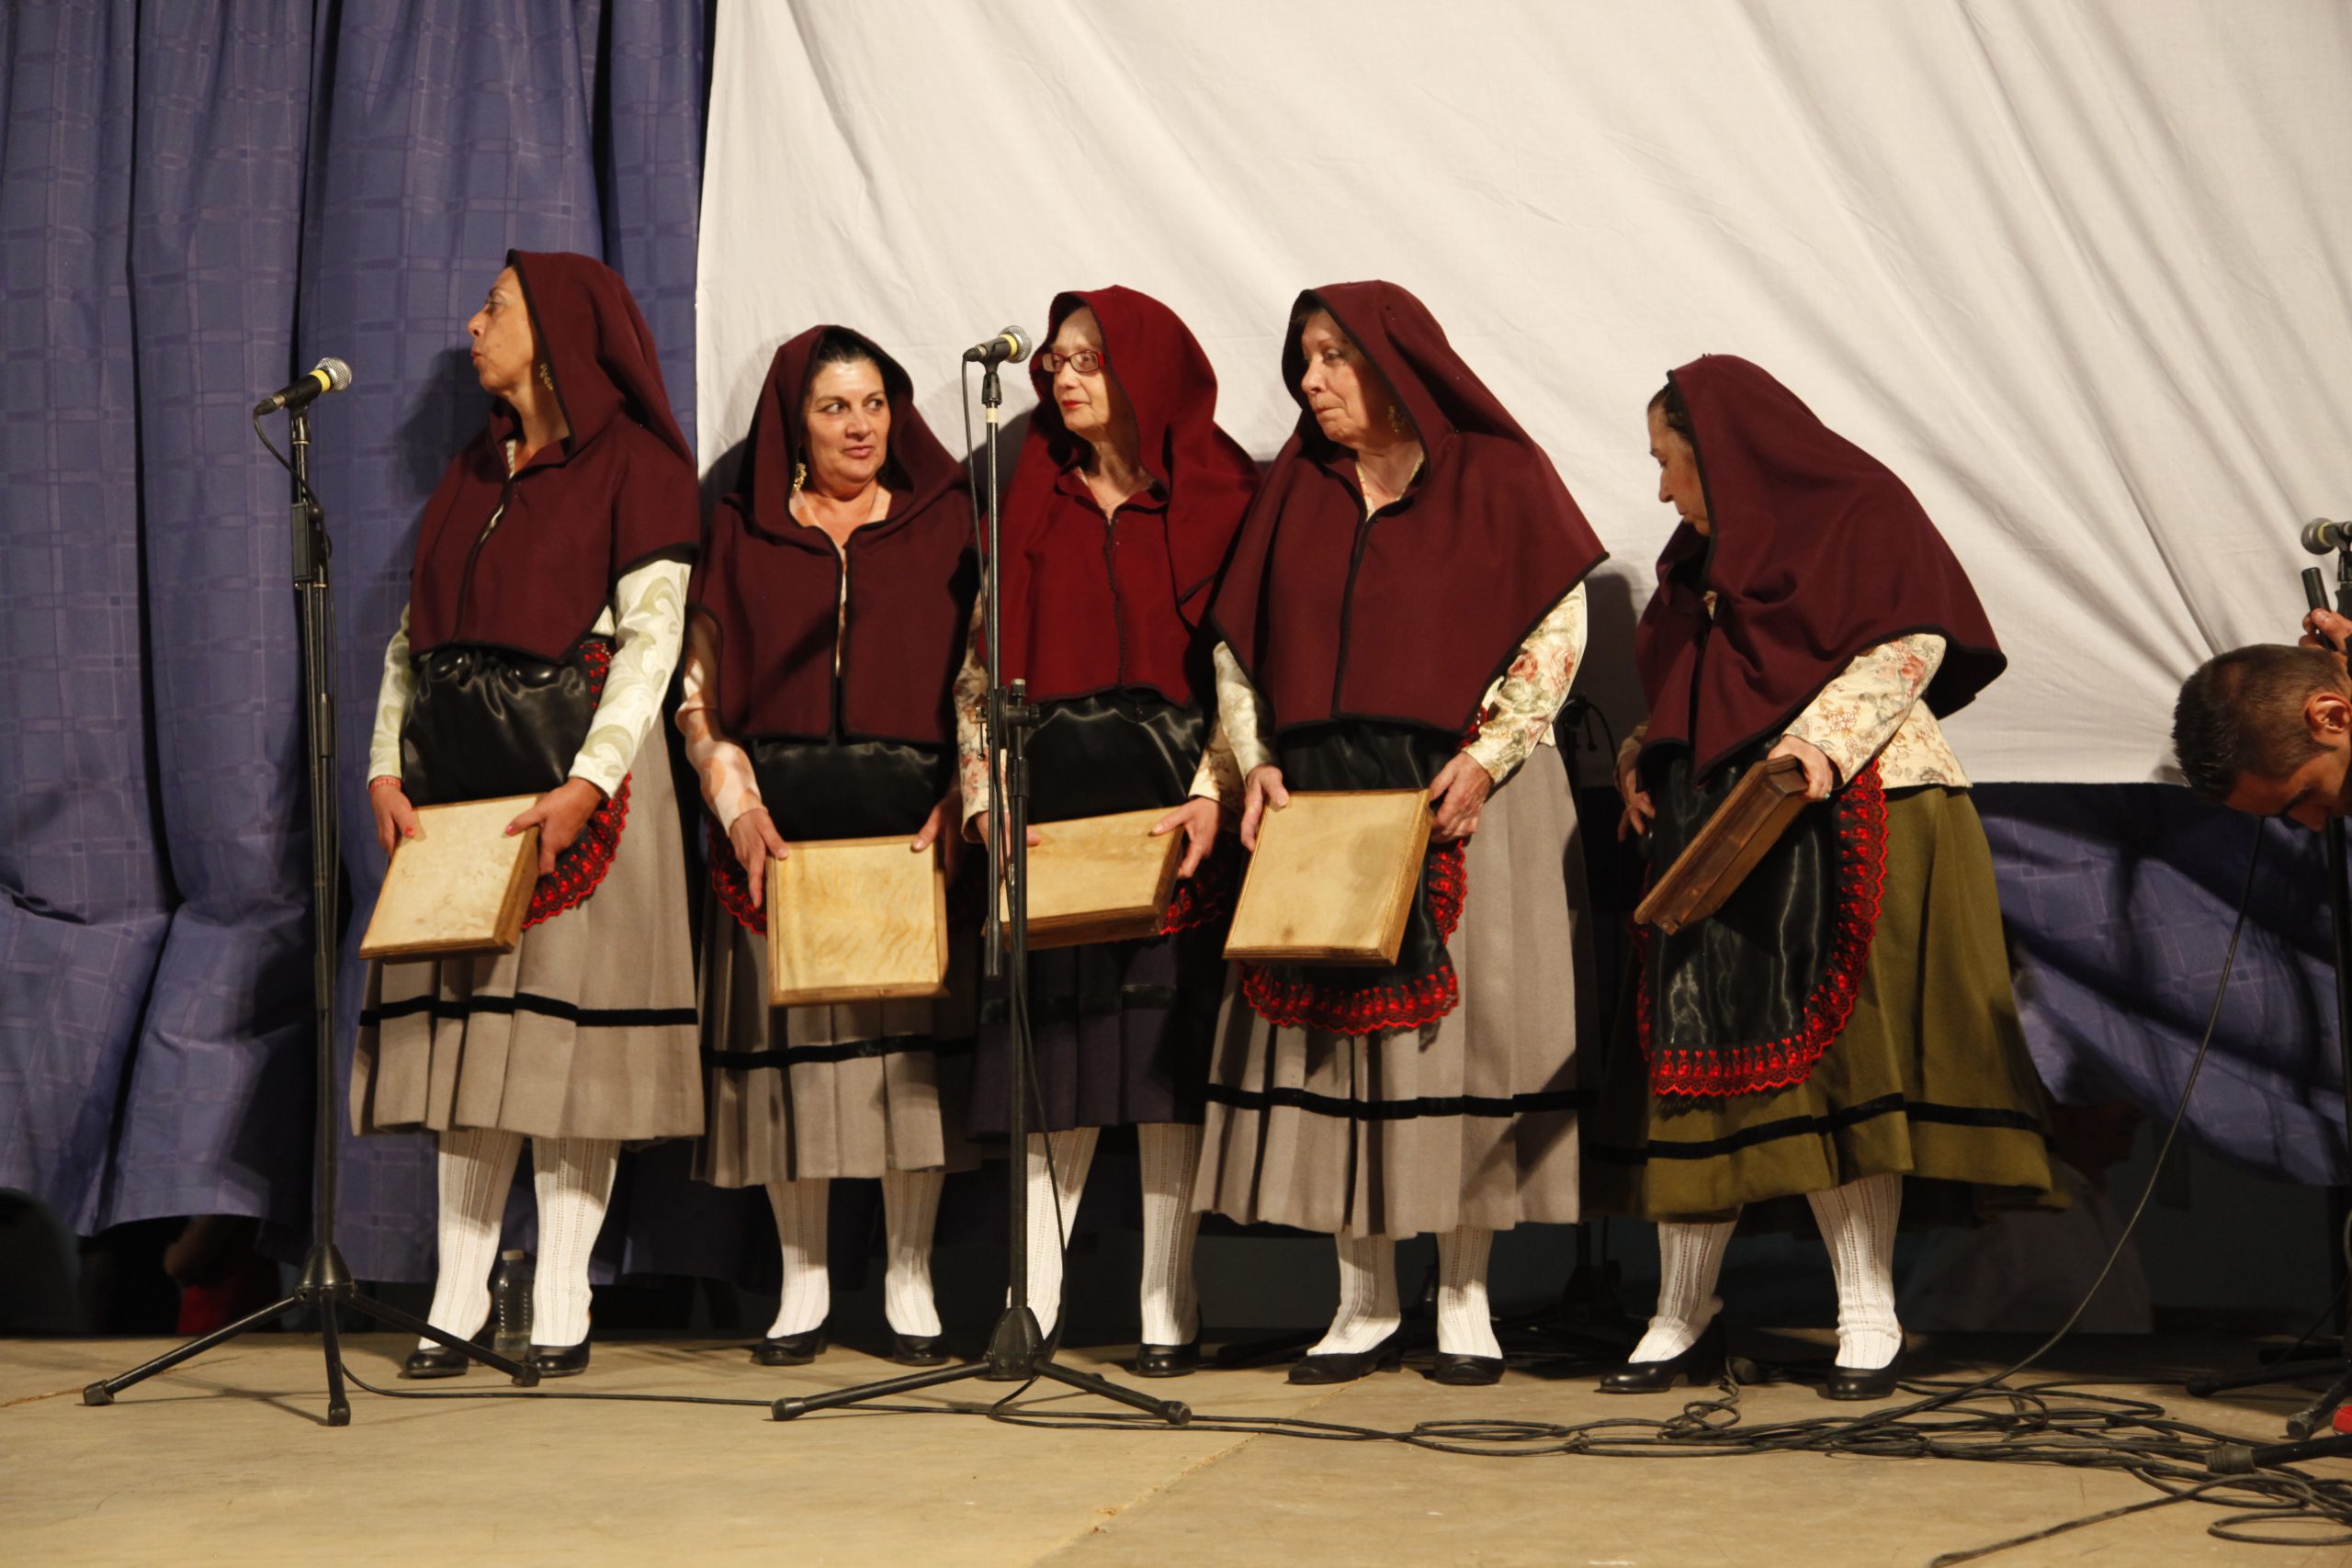 02 Participación de la danza del Pandero en Certamen de Música Tradicional de Encinasola, Huelva